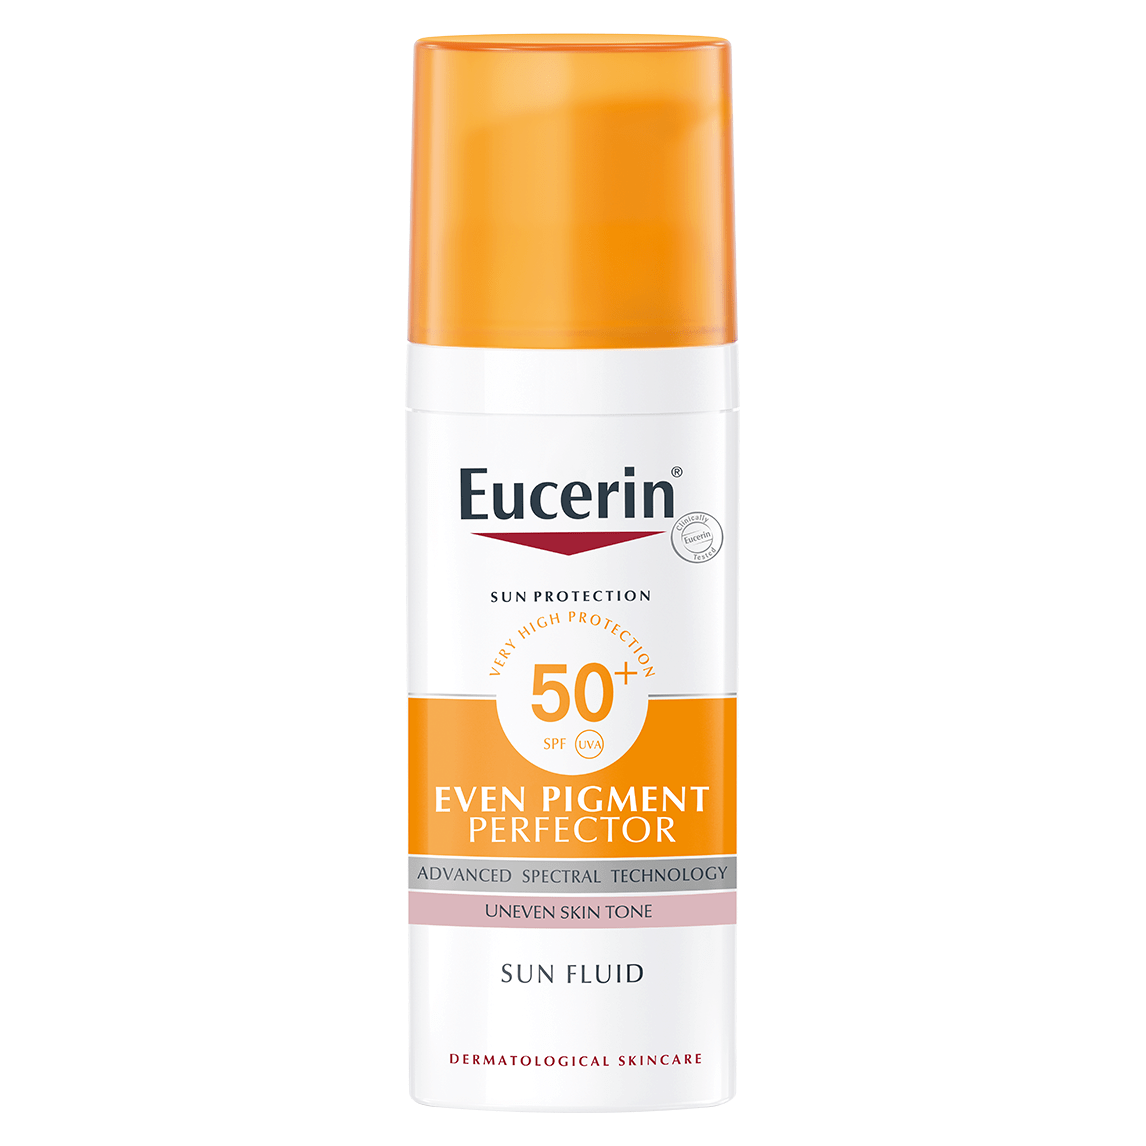 Eucerin Sun Fluid Even Pigment Perfector SPF 50+